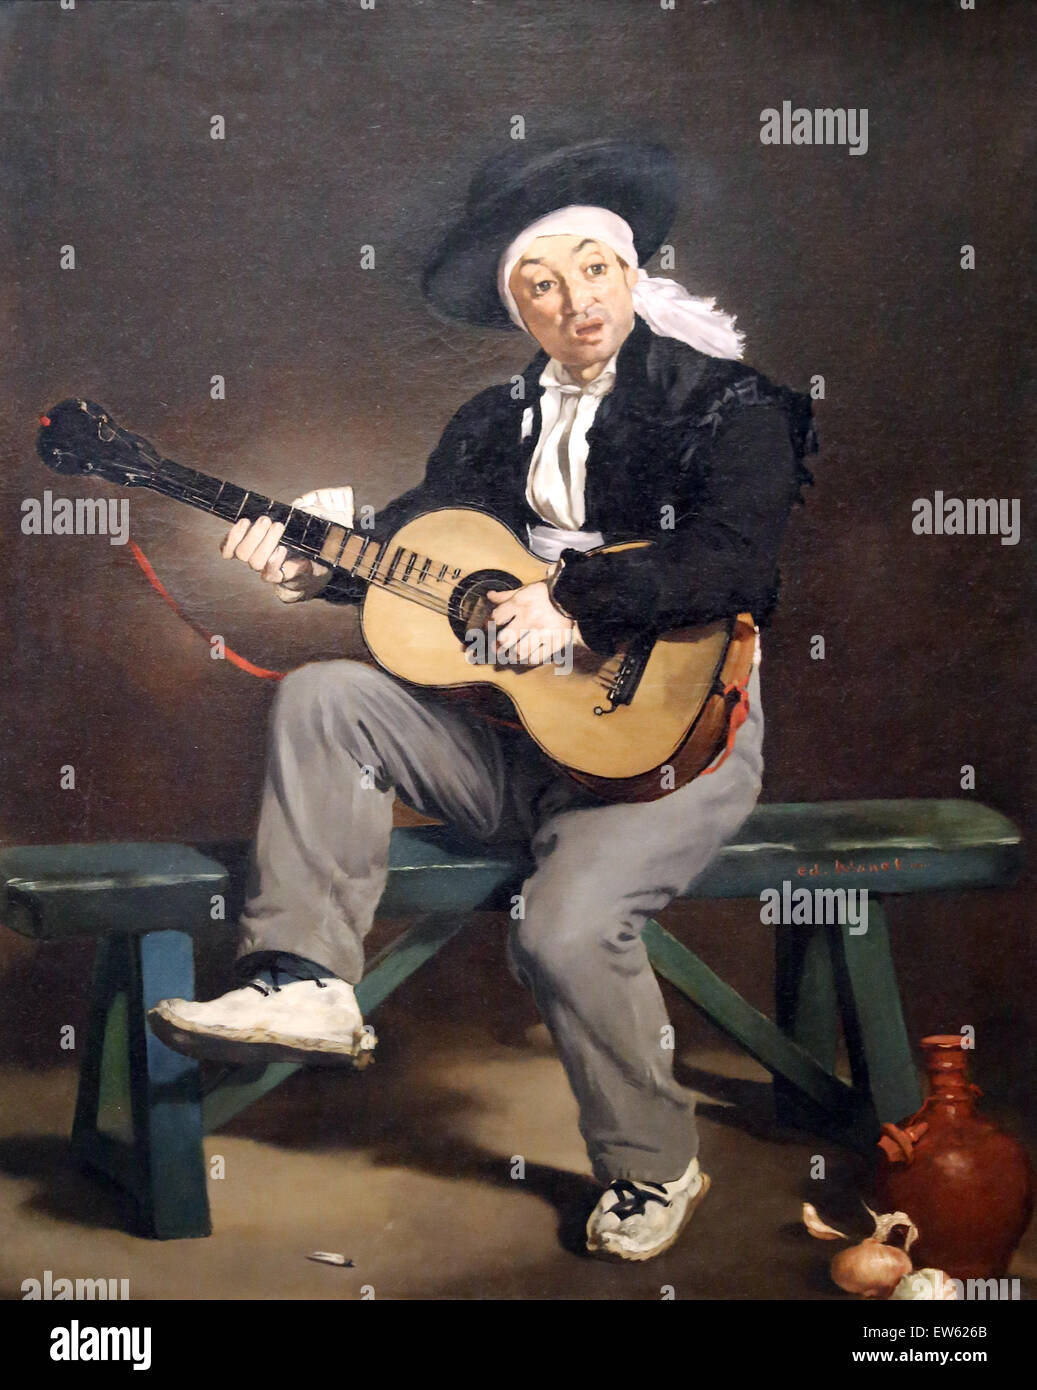 Edouard Manet (1832-1883). Le peintre français. Le chanteur espagnol, 1860. Huile sur toile. Metropolitan Museum of Art de New York. USA. Banque D'Images